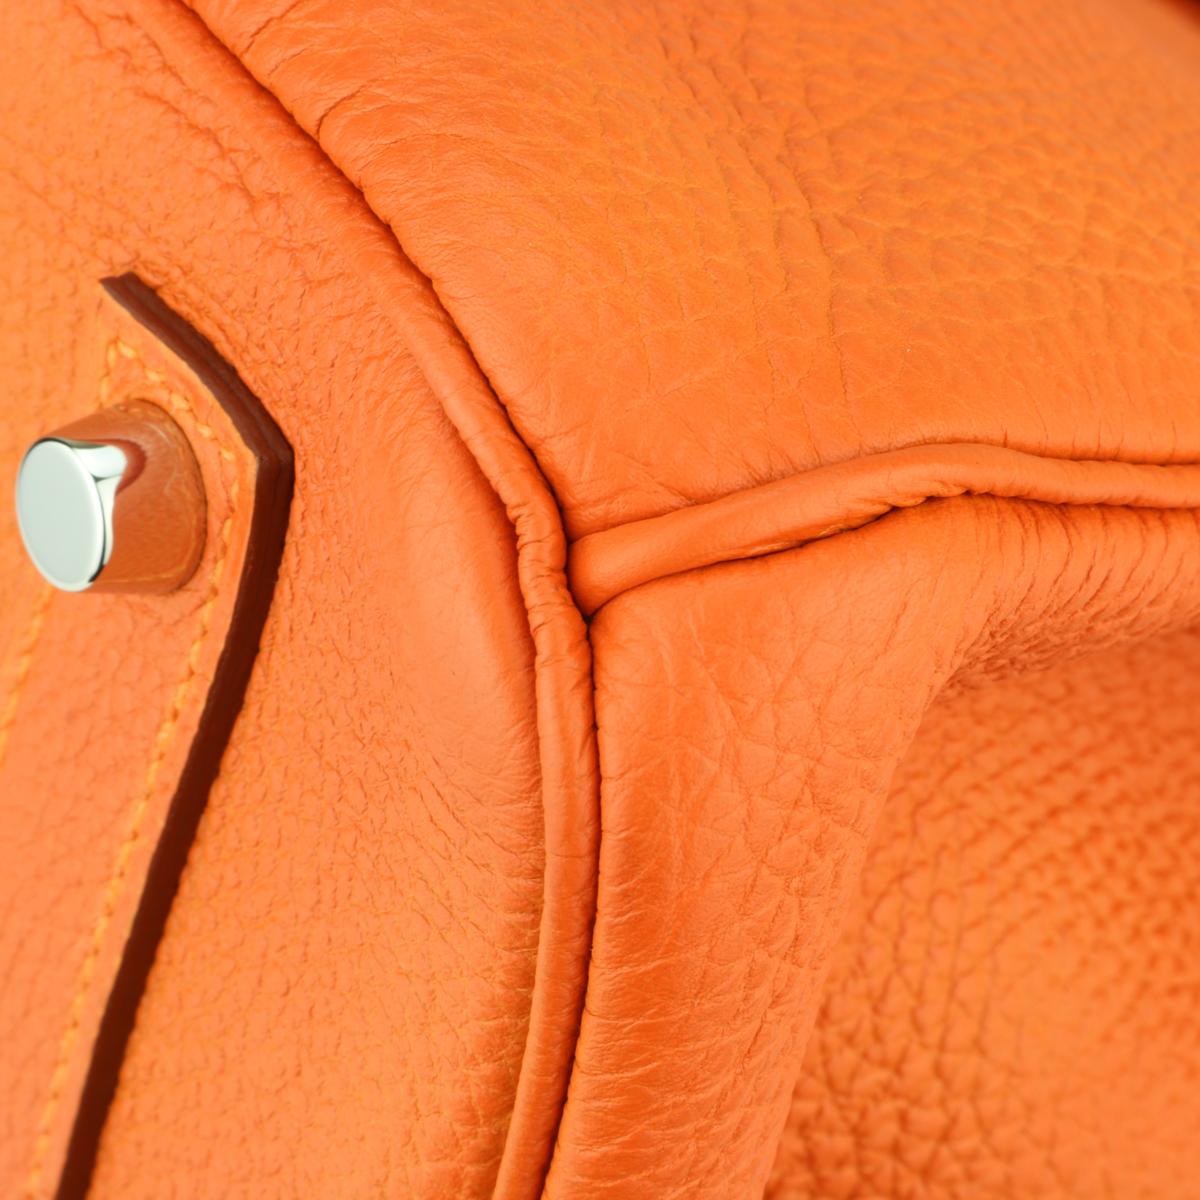 Hermès Birkin Bag 35cm Orange Togo Leather with Palladium Hardware Stamp M 2009 1